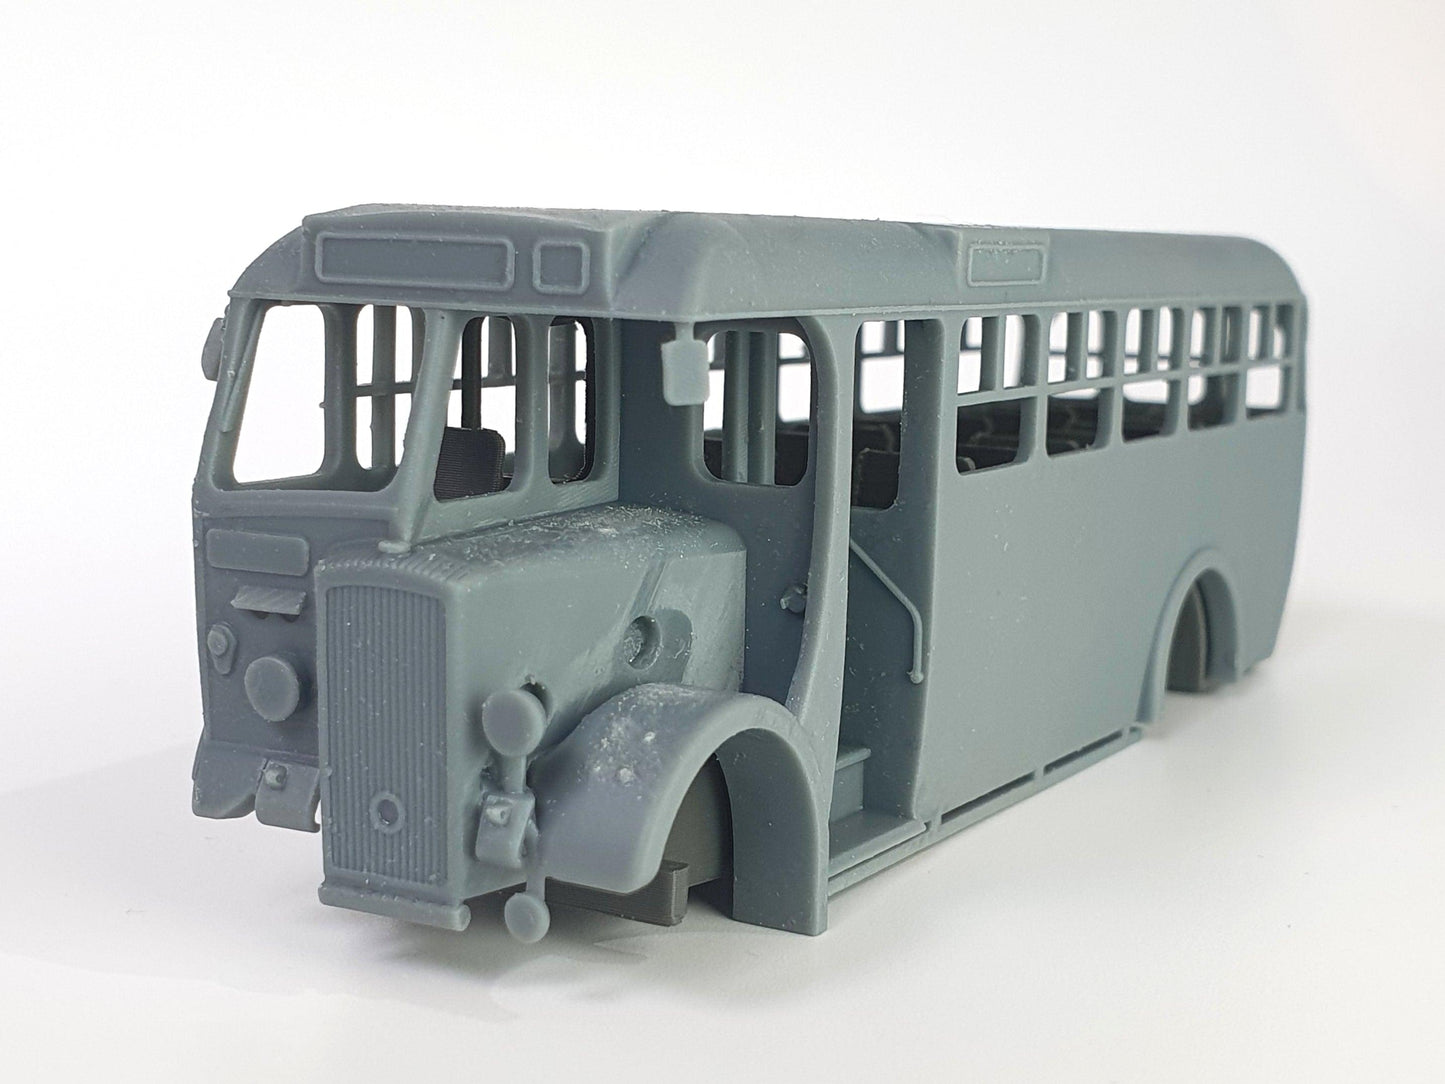 Coventry Daimler CVD6 bus model